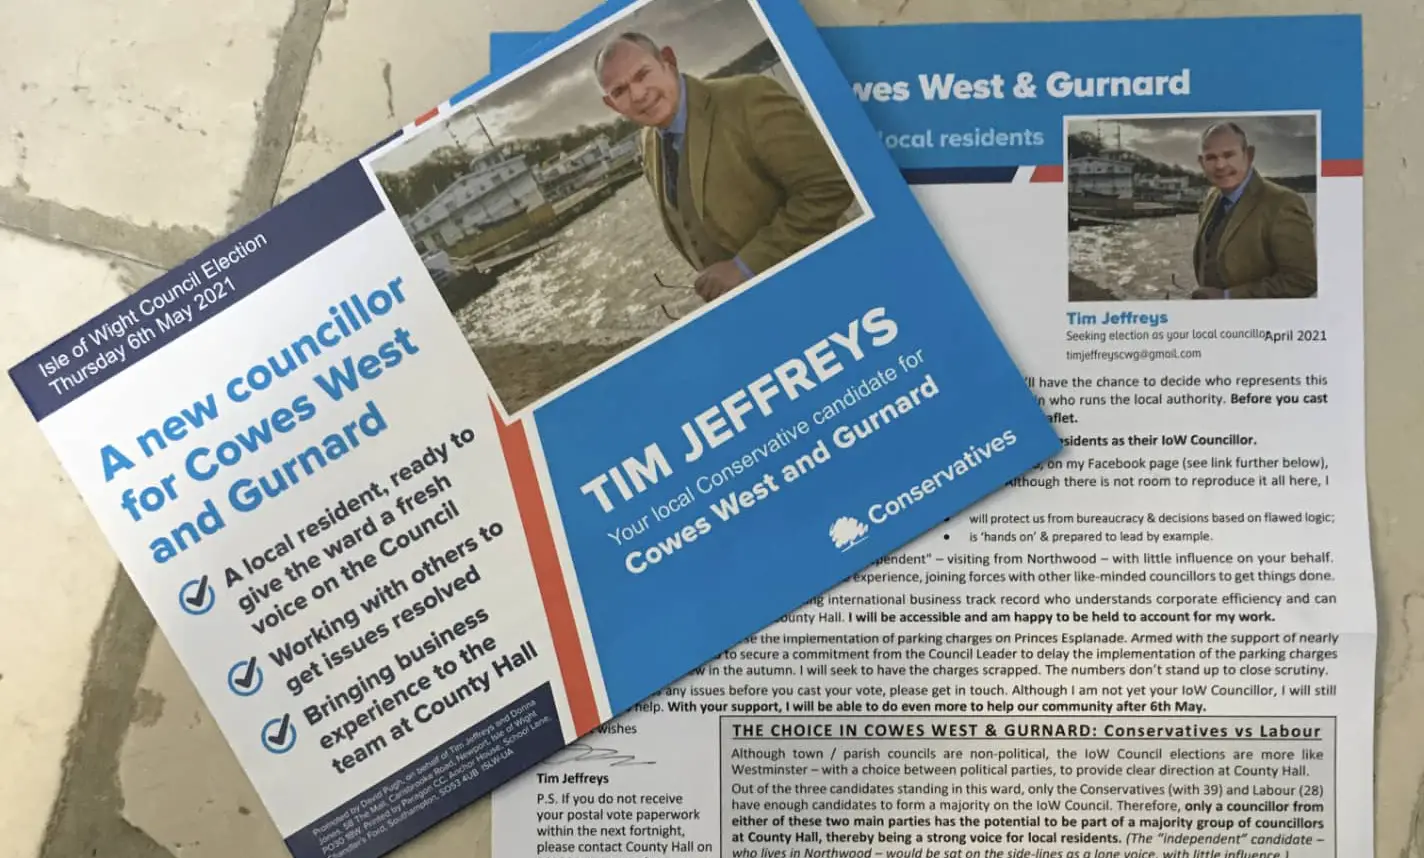 Tim Jeffreys' leaflet and letter